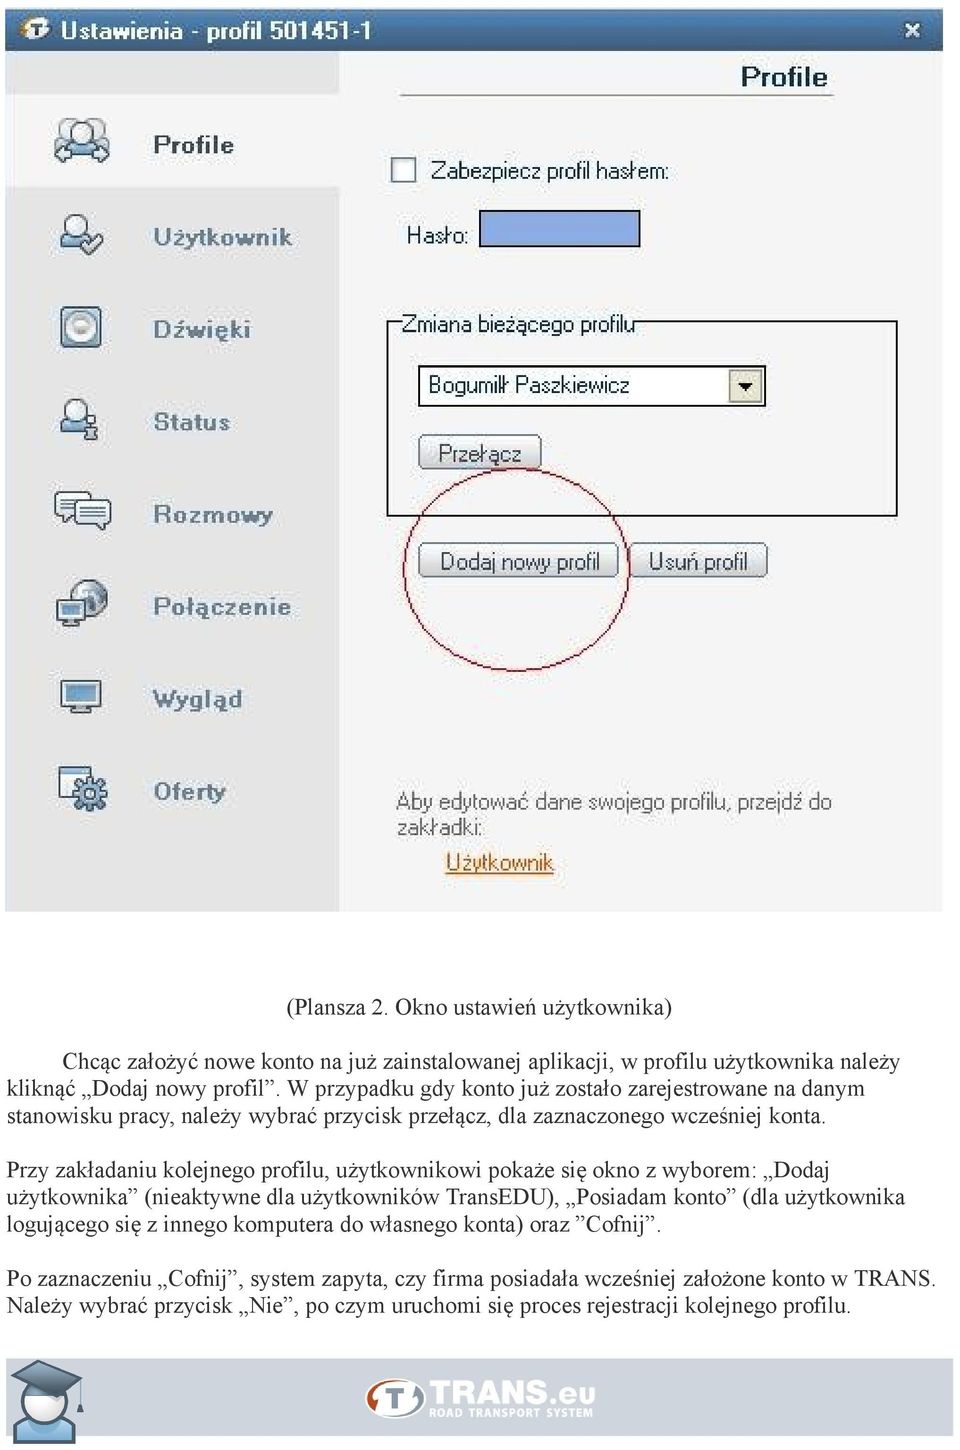 Przy zakładaniu kolejnego profilu, użytkownikowi pokaże się okno z wyborem: Dodaj użytkownika (nieaktywne dla użytkowników TransEDU), Posiadam konto (dla użytkownika logującego